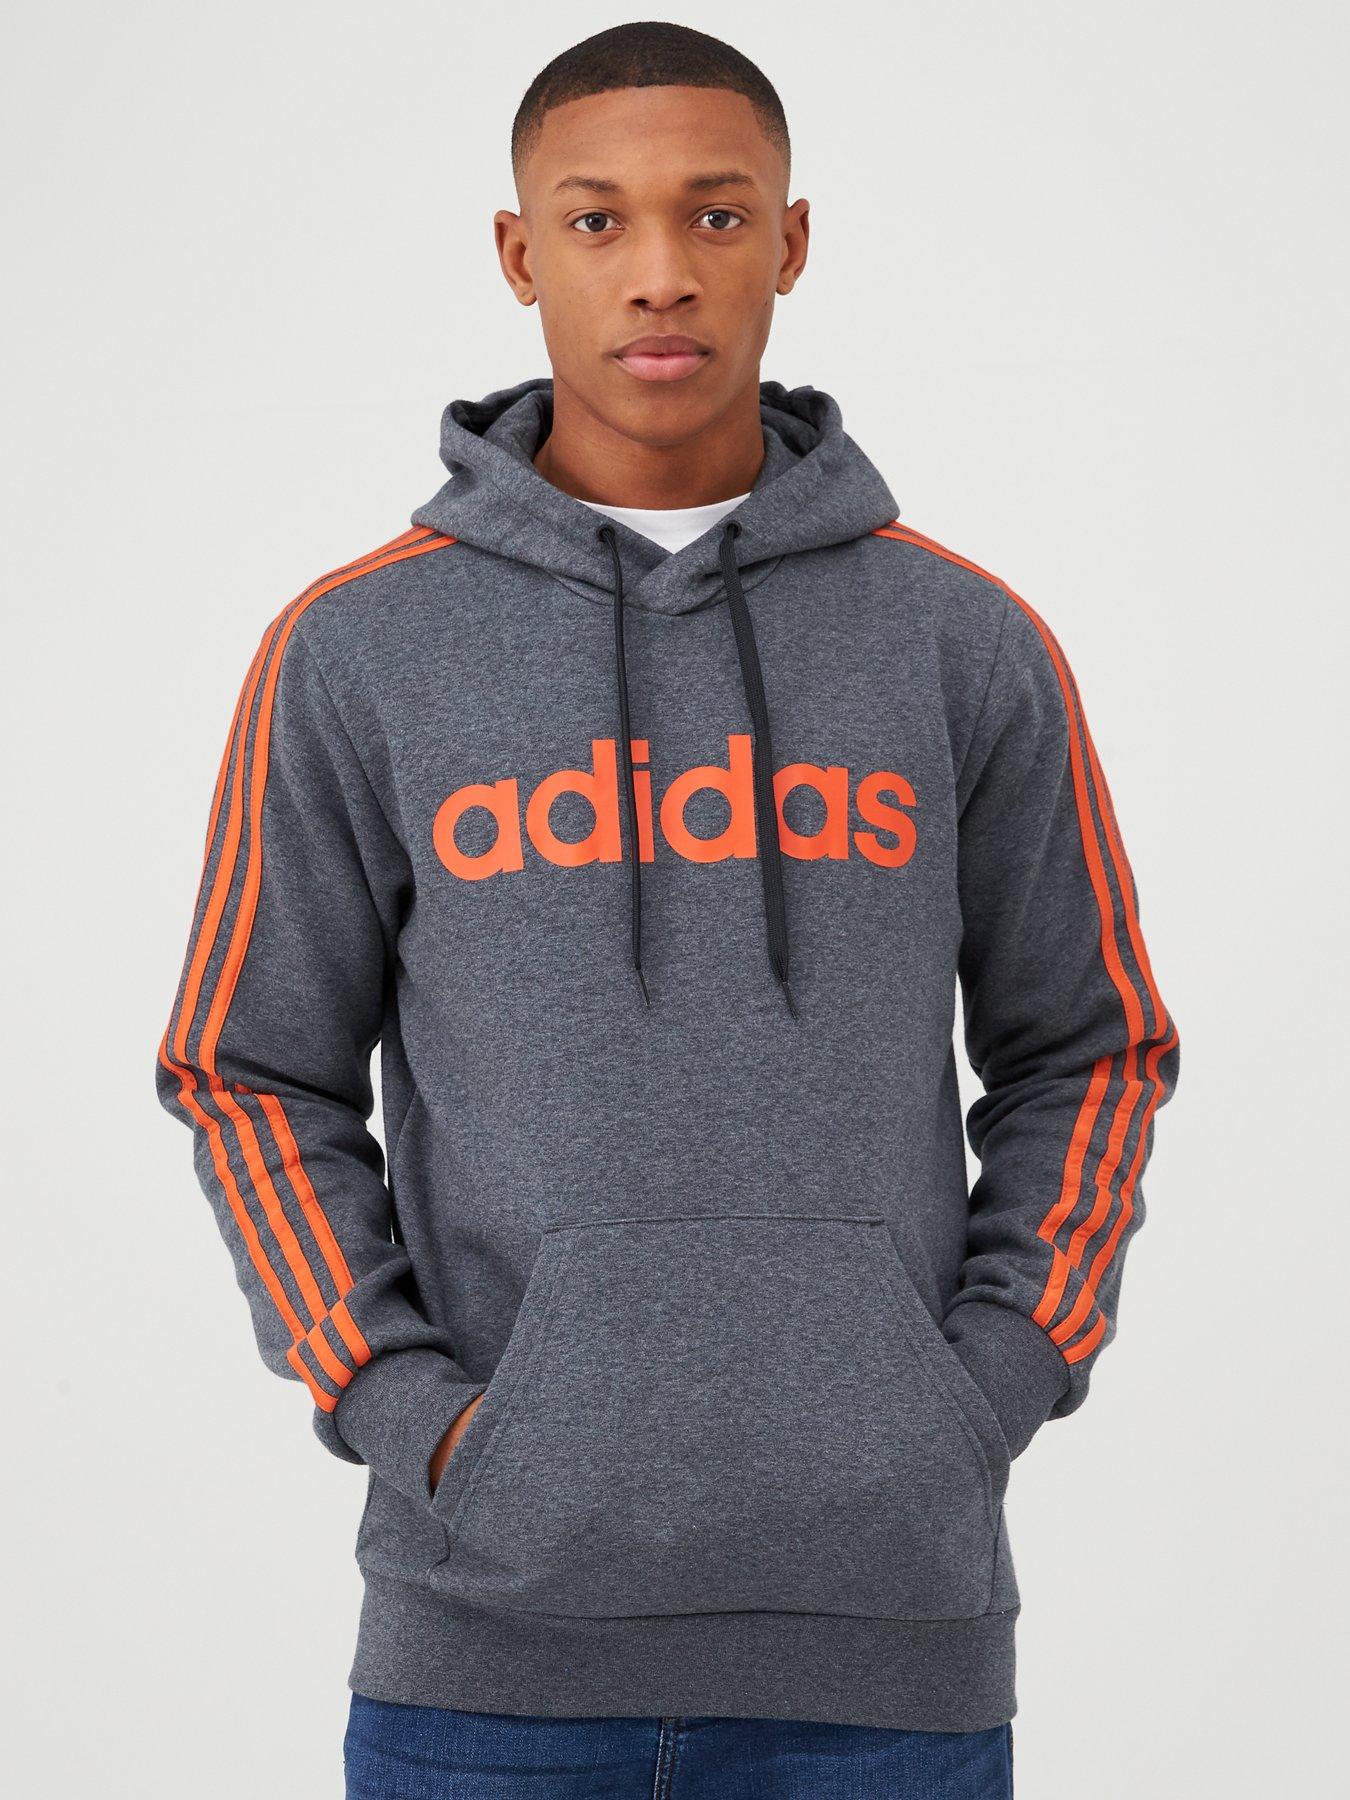 adidas grey and orange hoodie